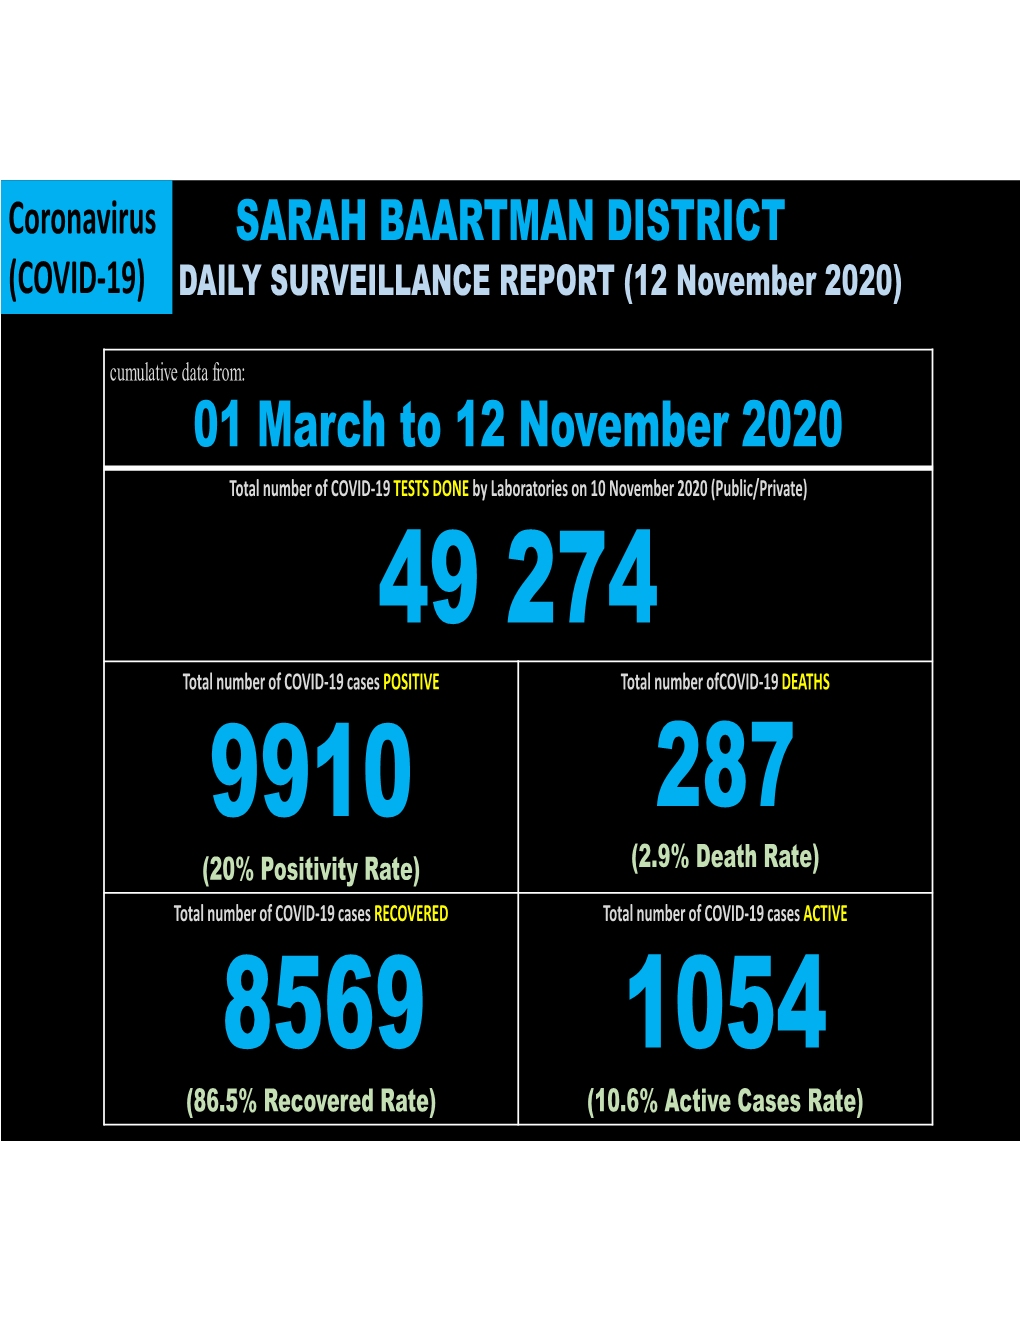 Sarah Baartman District